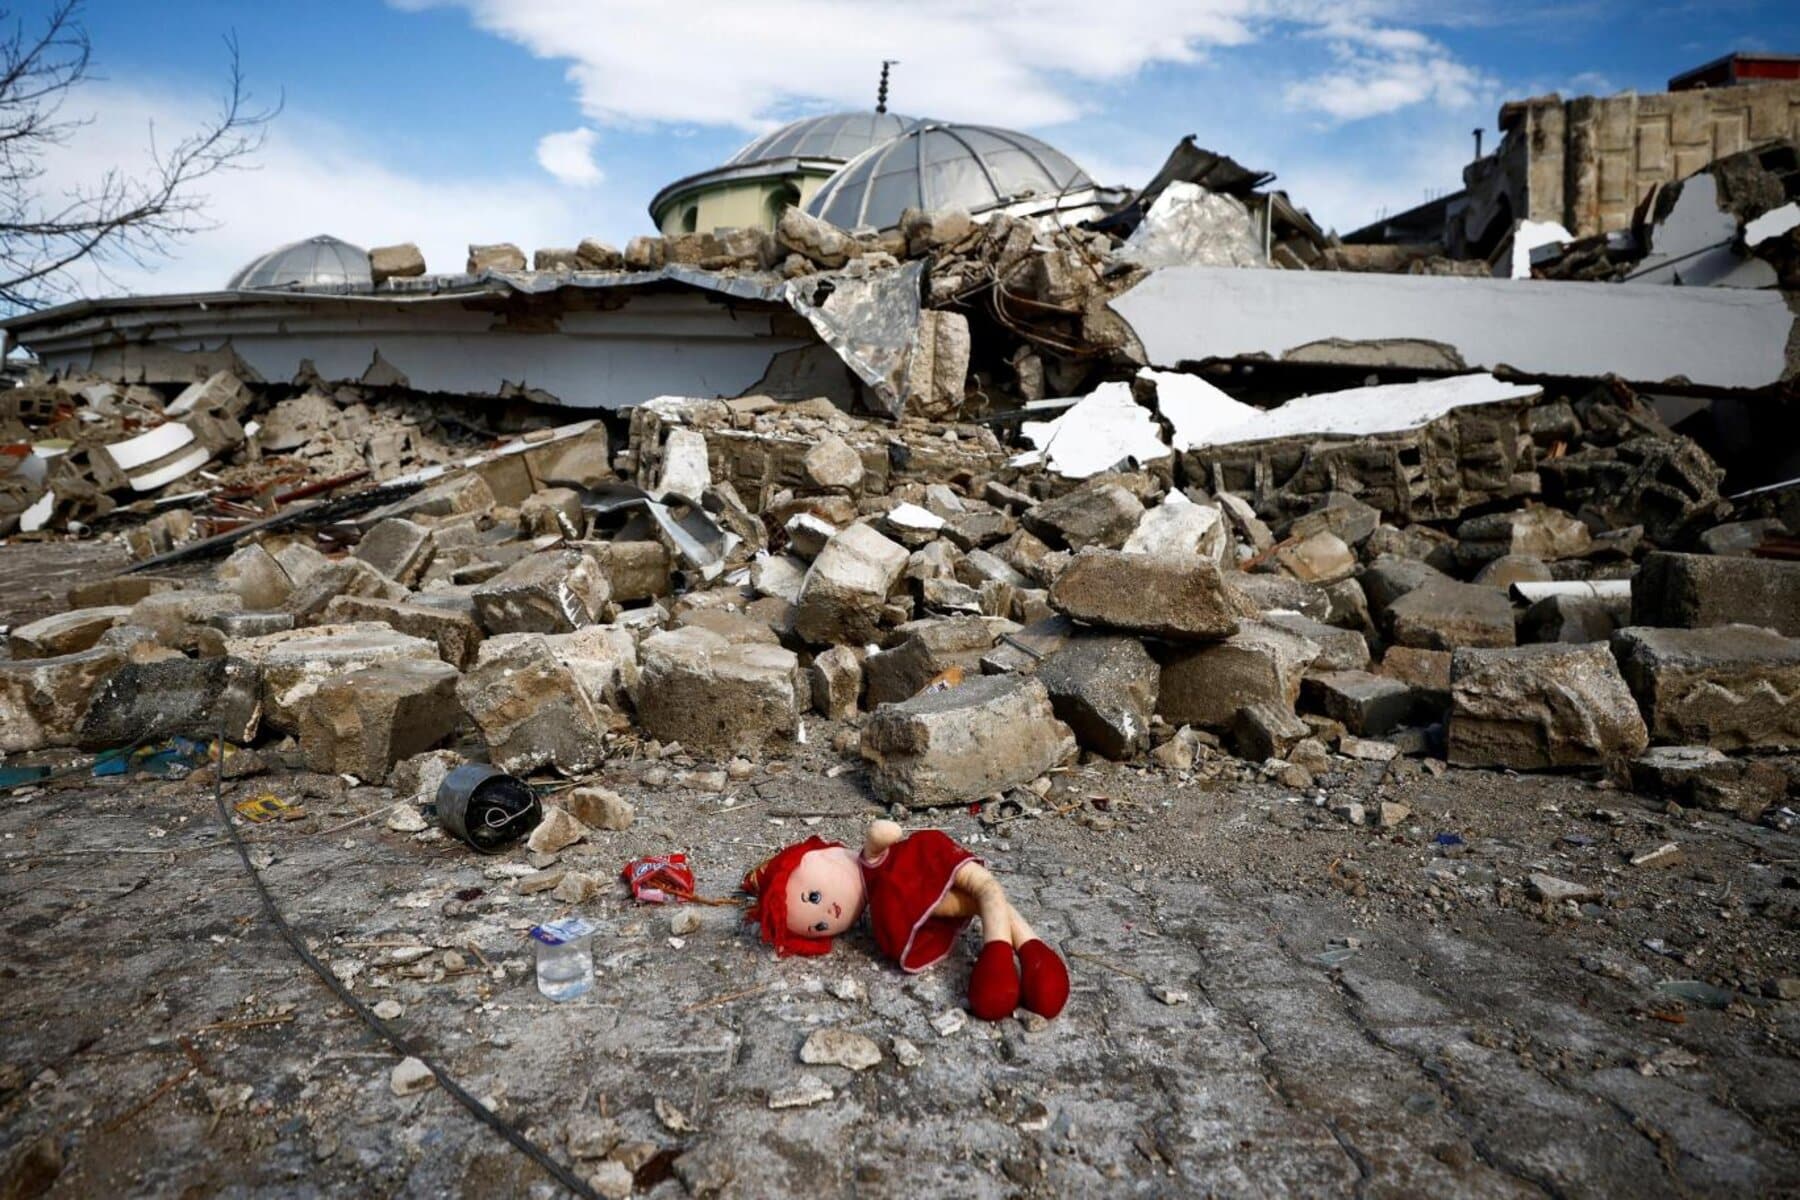  alarabtrend.com تصدر مقطع مصور منصات التواصل أظهر نجاة سوري من موت محقق خلال توثيقه دمار منزله جراء زلزال ضرب مدينة أنطاكيا في ولاية هاتاي جنوبي تركيا